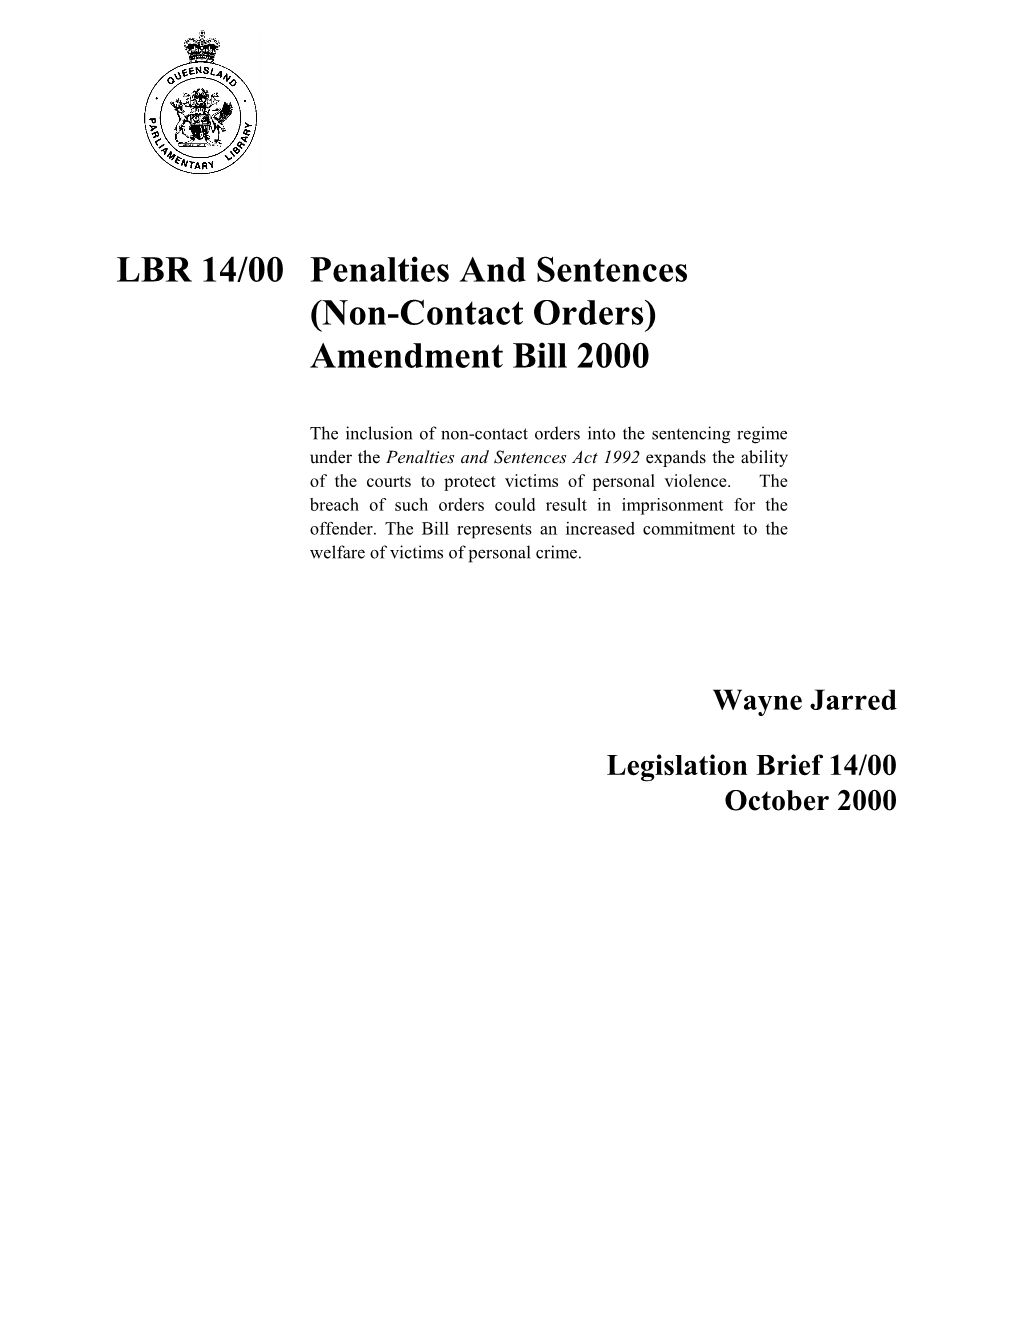 LBR 14/00 Penalties and Sentences (Non-Contact Orders) Amendment Bill 2000